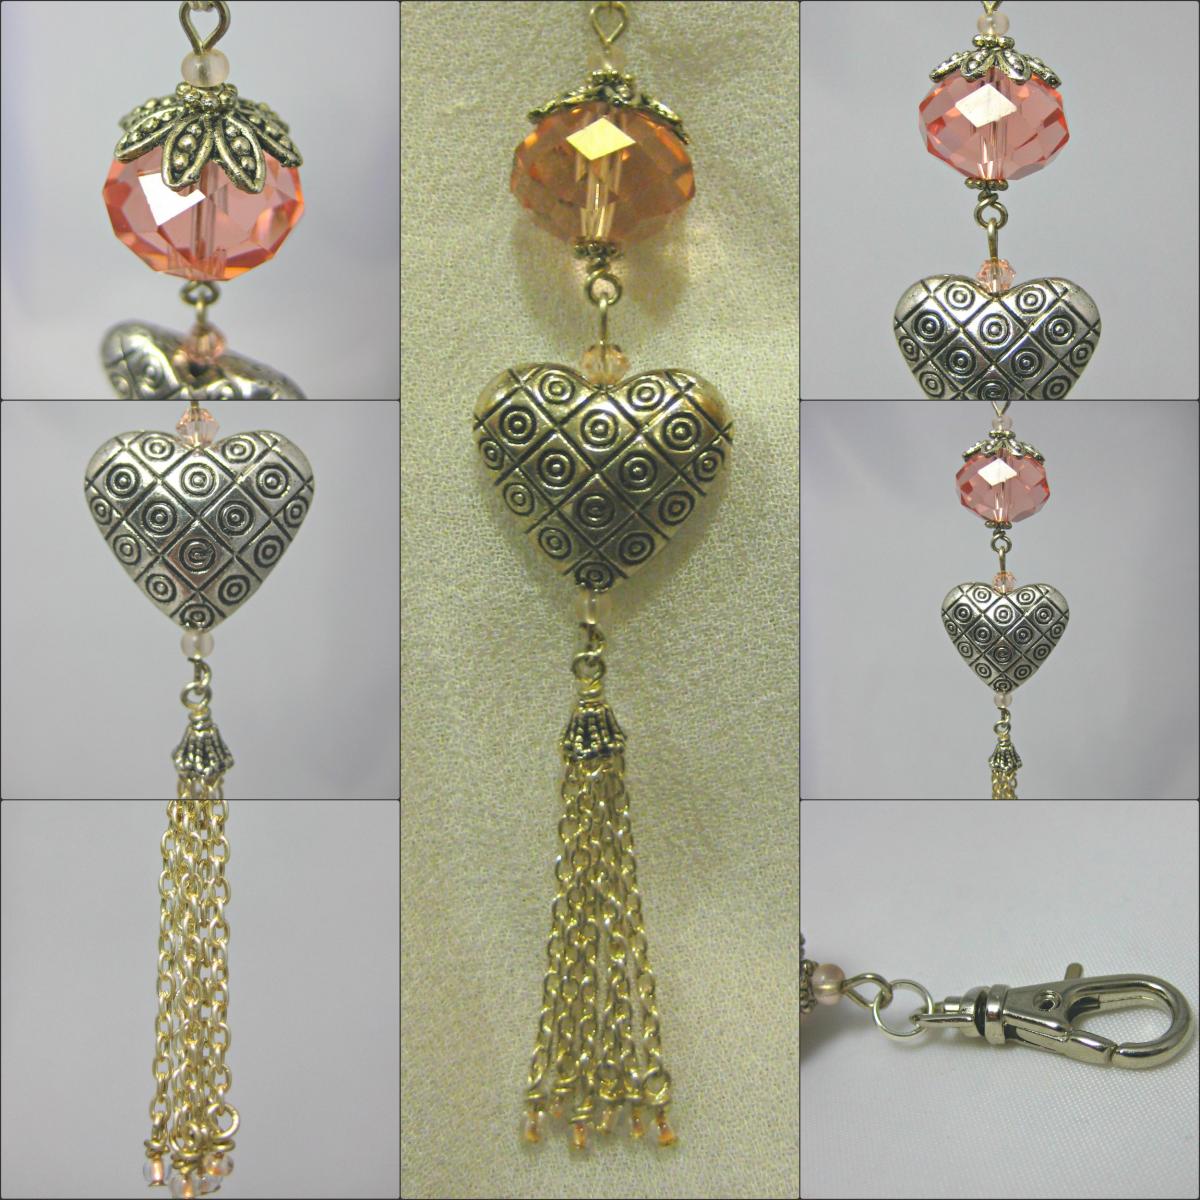 Peach Crystal And Tasselled Heart Handbag Charm